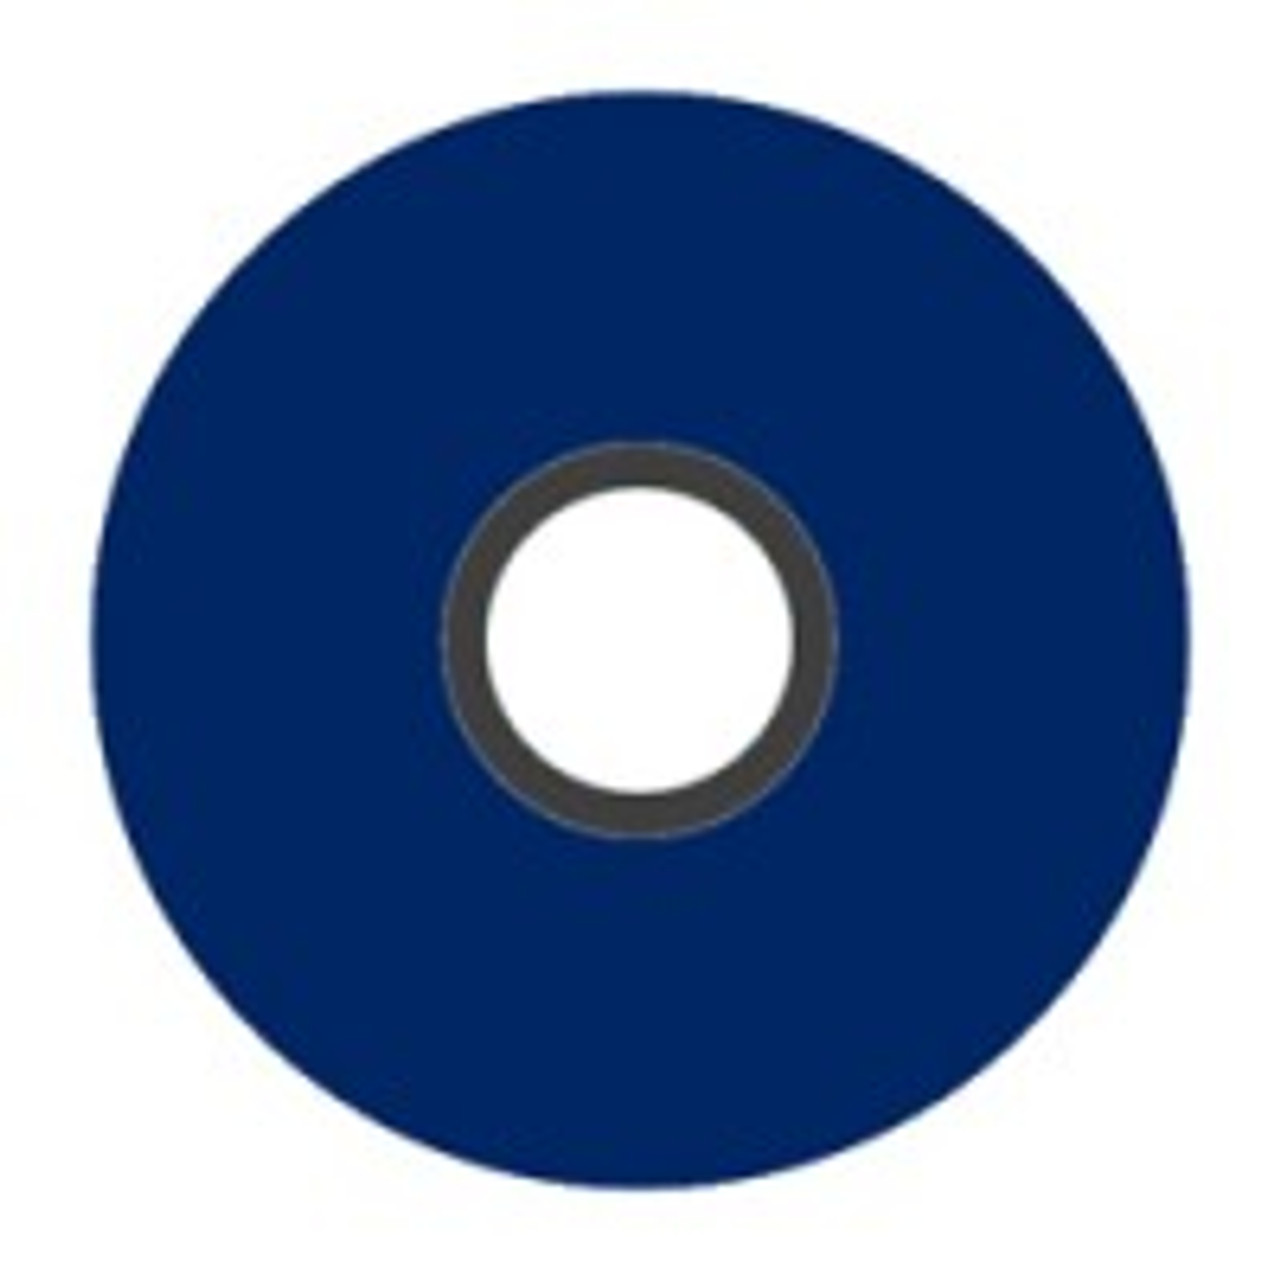 Magna-Glide 'M' Bobbins, Jar of 10, 30281 Blue Berry